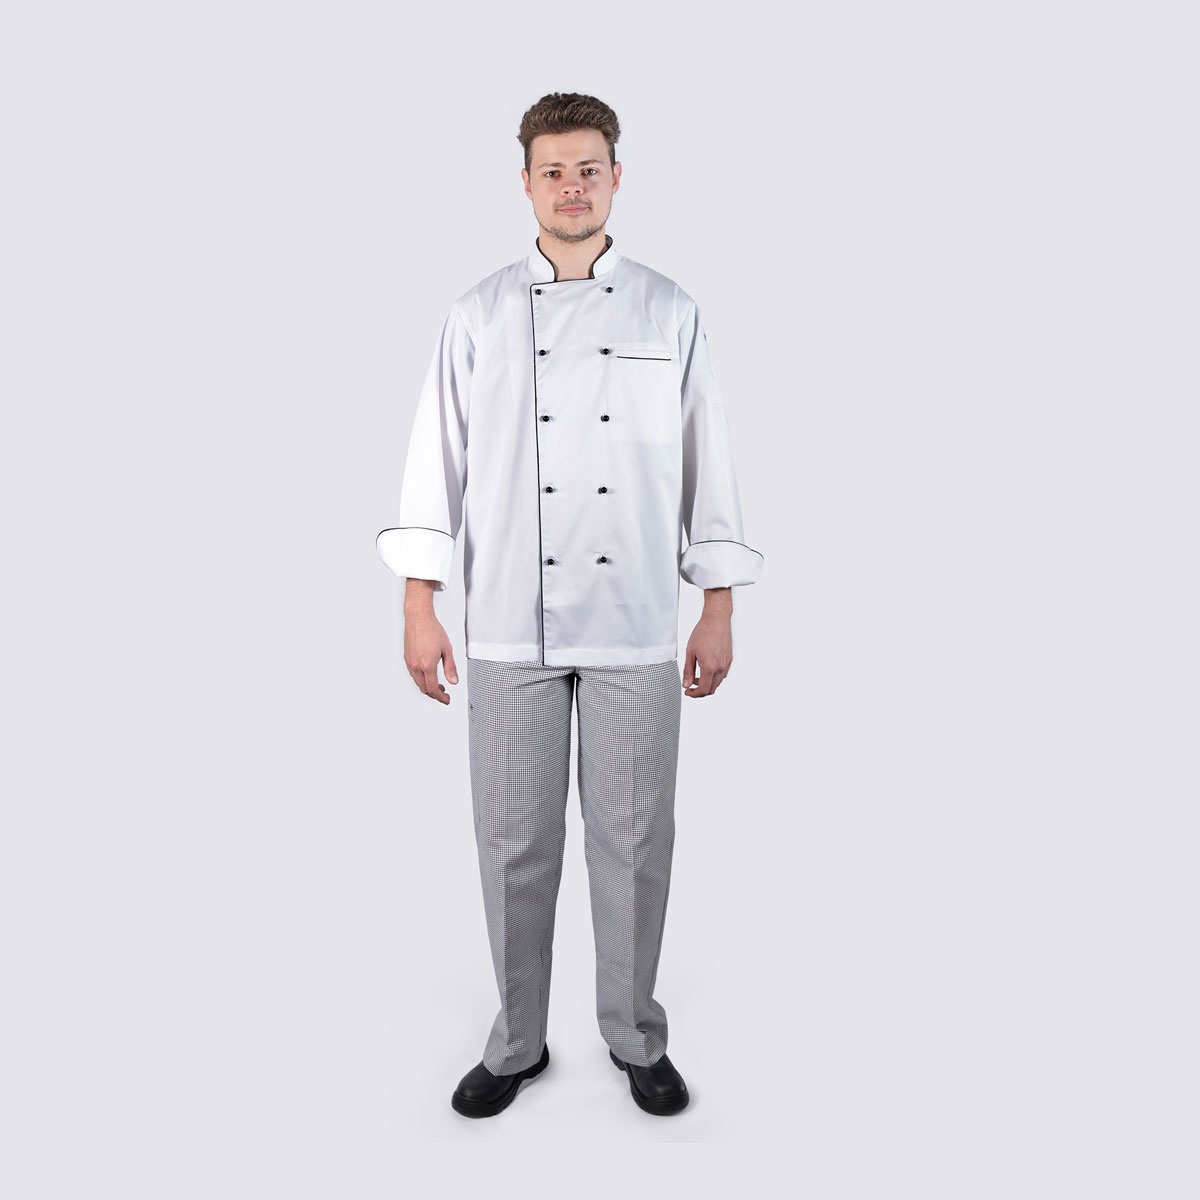 Chef Jacket Black Piping Long Sleeve + Checkered Pant